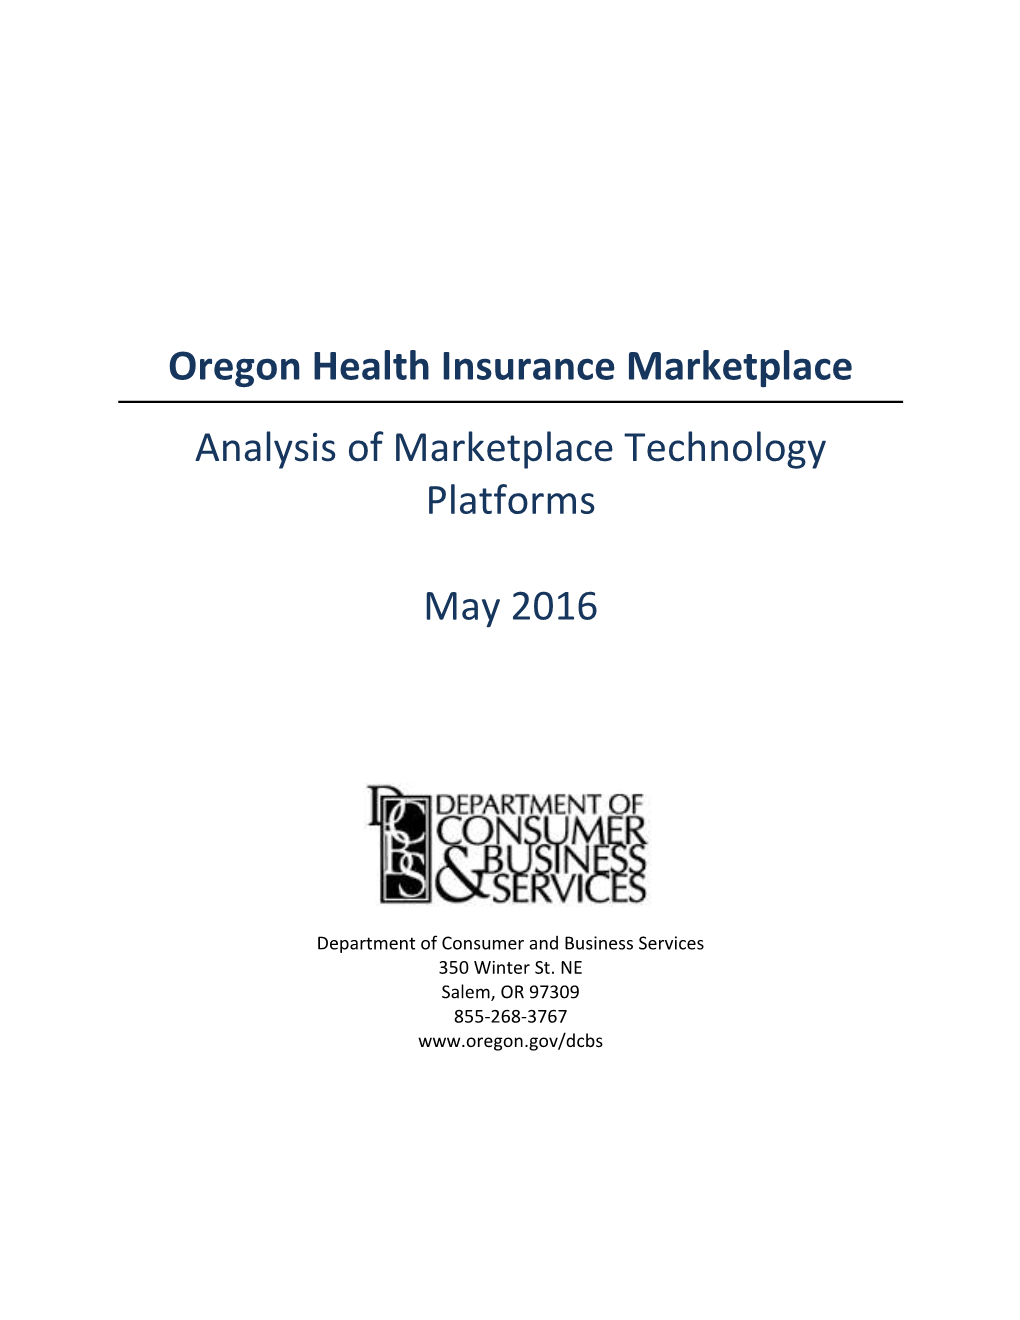 May 4, 2016 Marketplace Technology Options Analysis